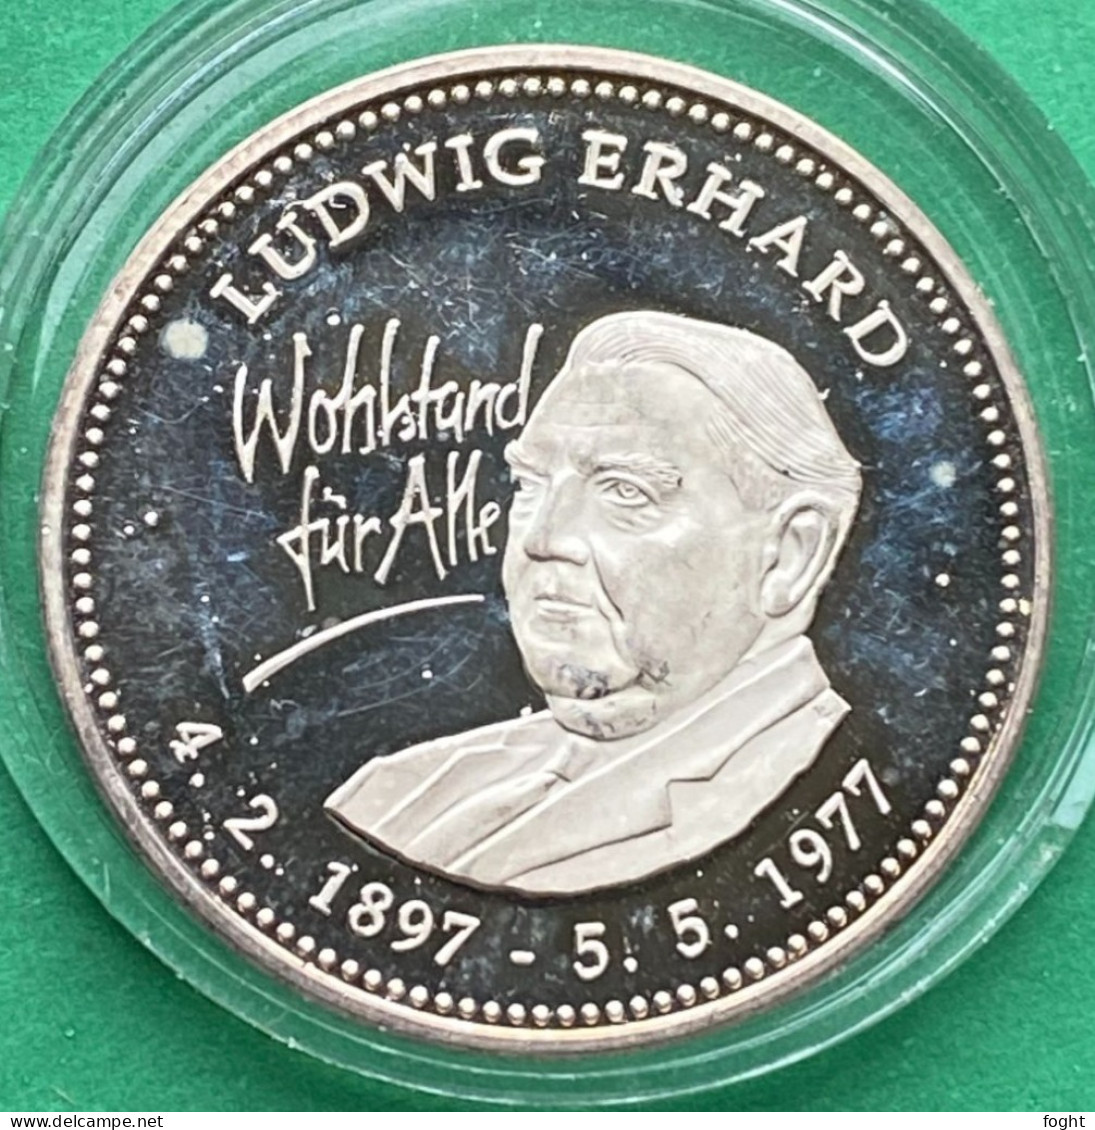 1997 Germany /BRD Medaille  Ludwig Erhard .500 Silber,5821 - Profesionales/De Sociedad